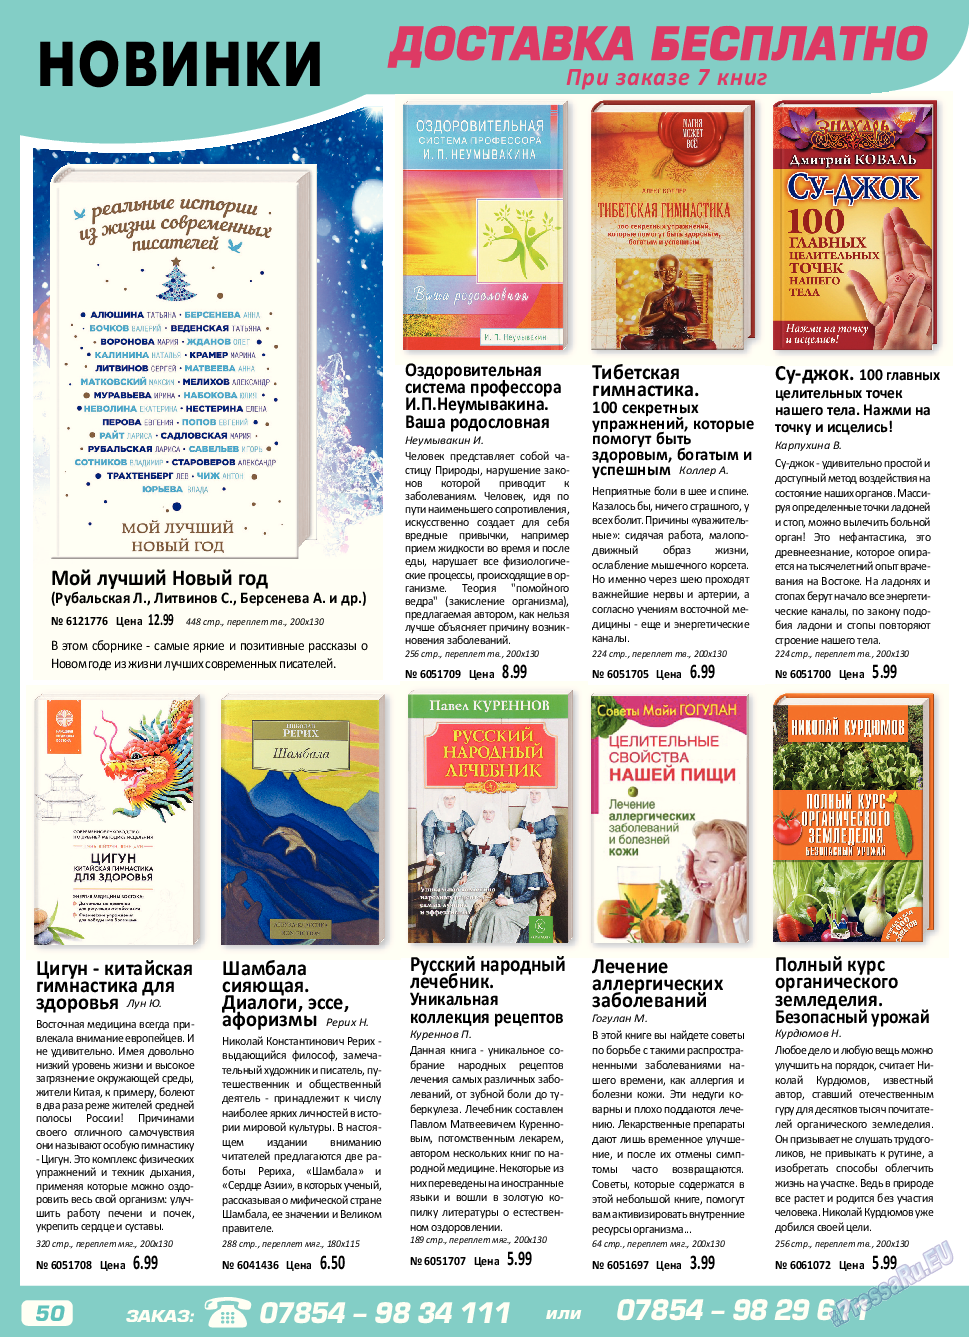 Panorama-mir (журнал). 2017 год, номер 7, стр. 50